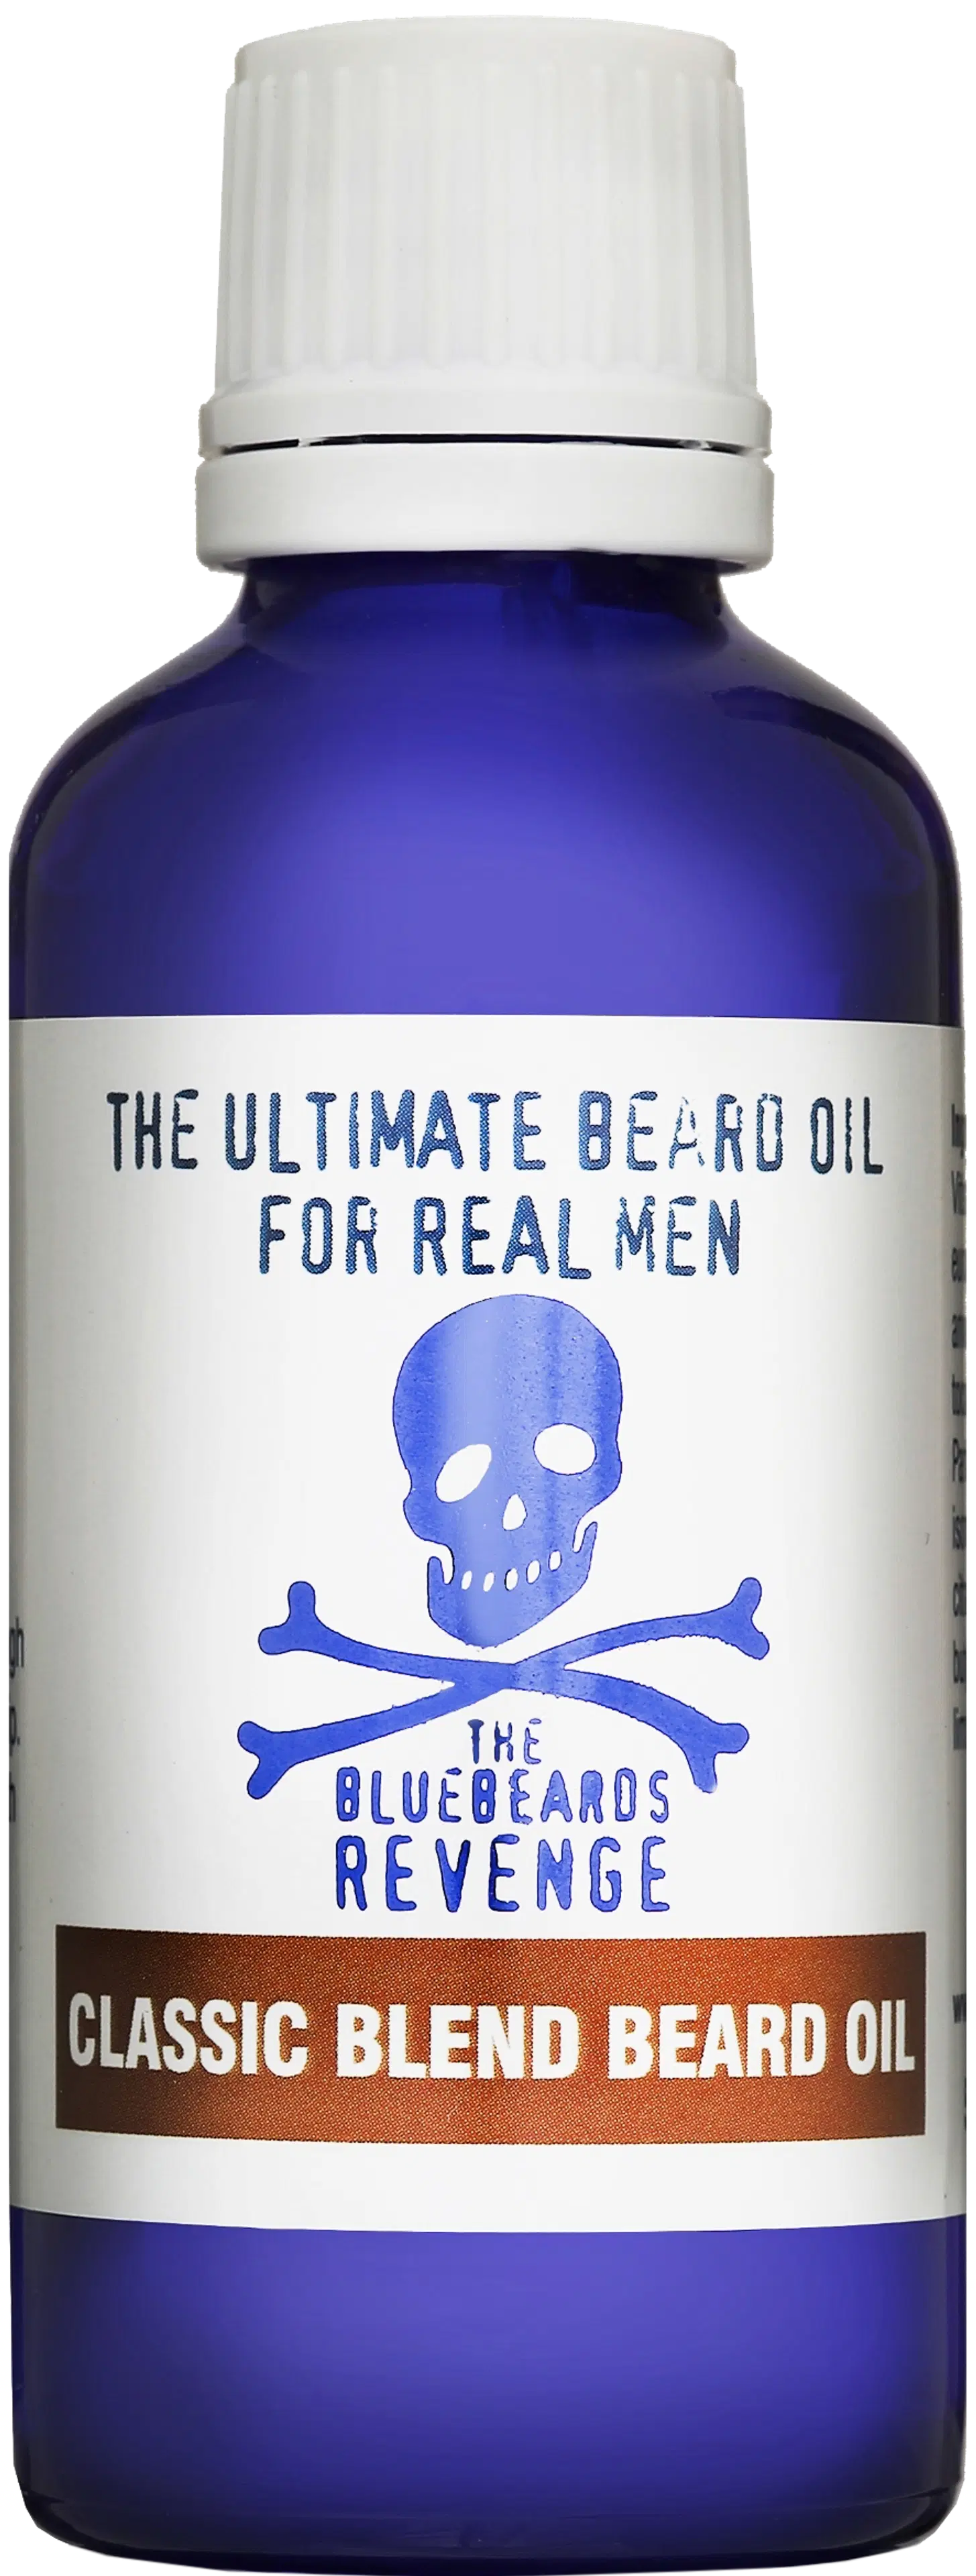 The Bluebeards Revenge Classic Blend Beard Oil partaöljy 50 ml